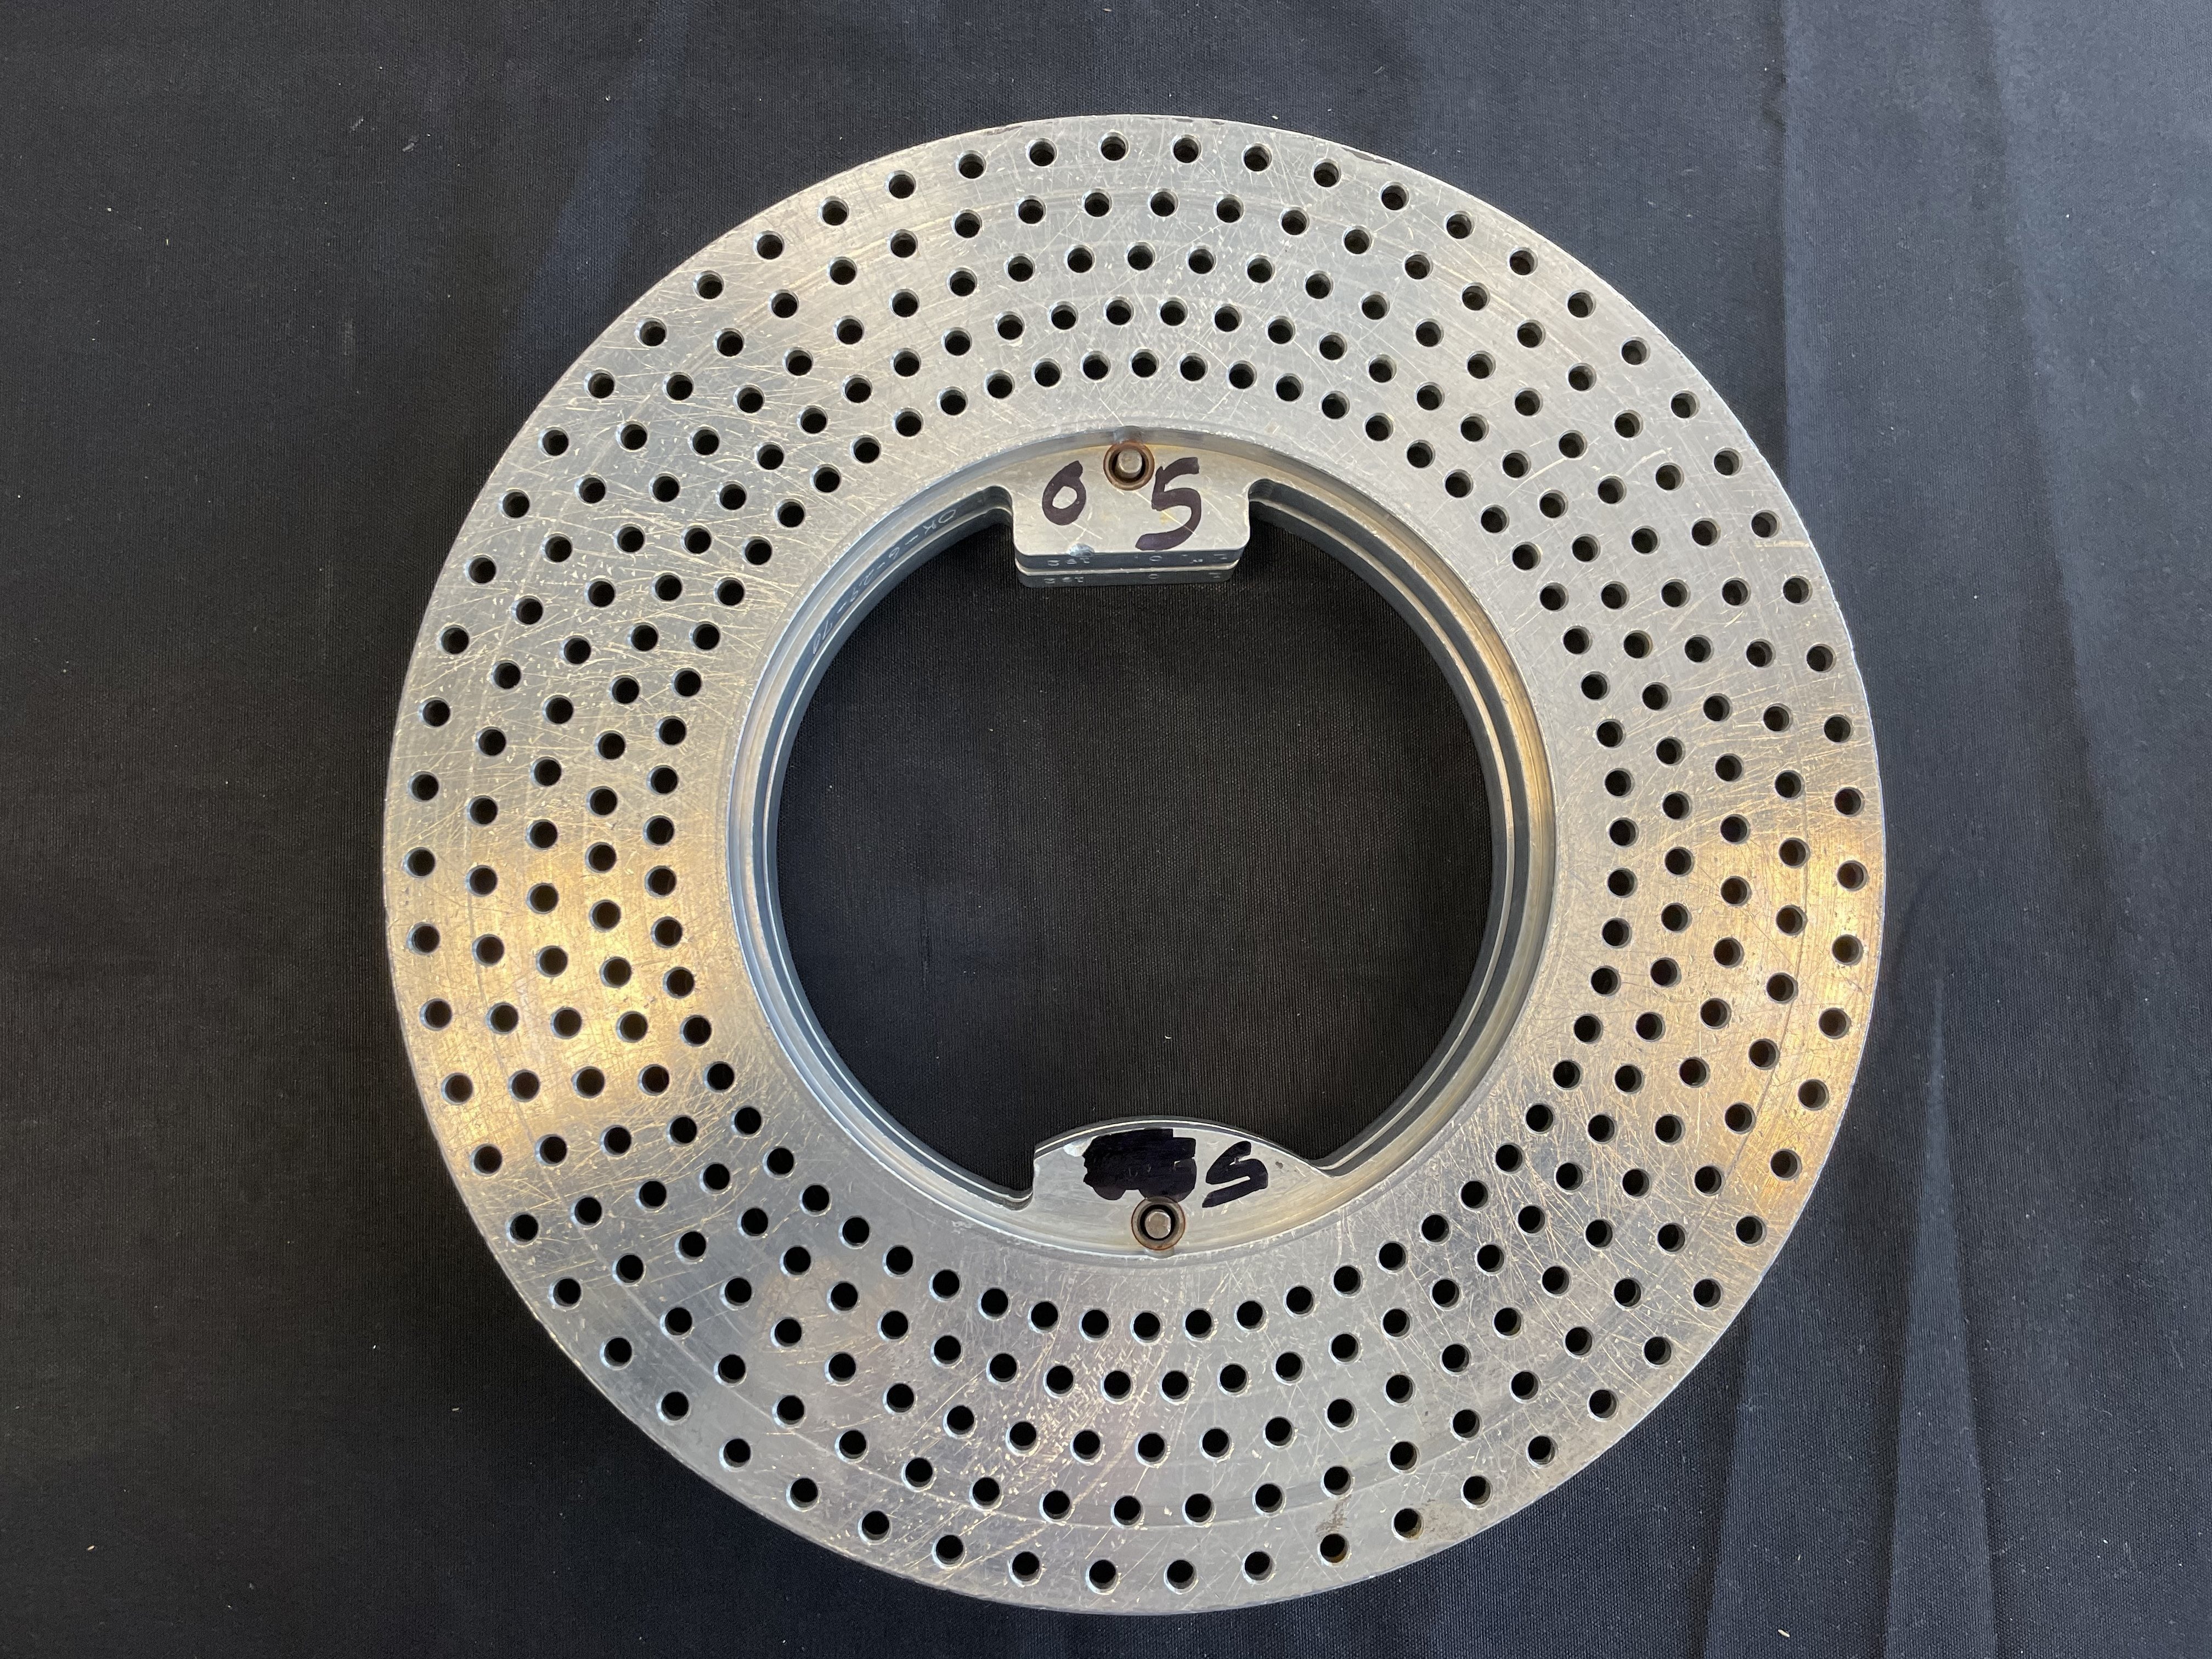 Size 0, 5 Hole Capsule Rings for Elanco Type 8 Machine